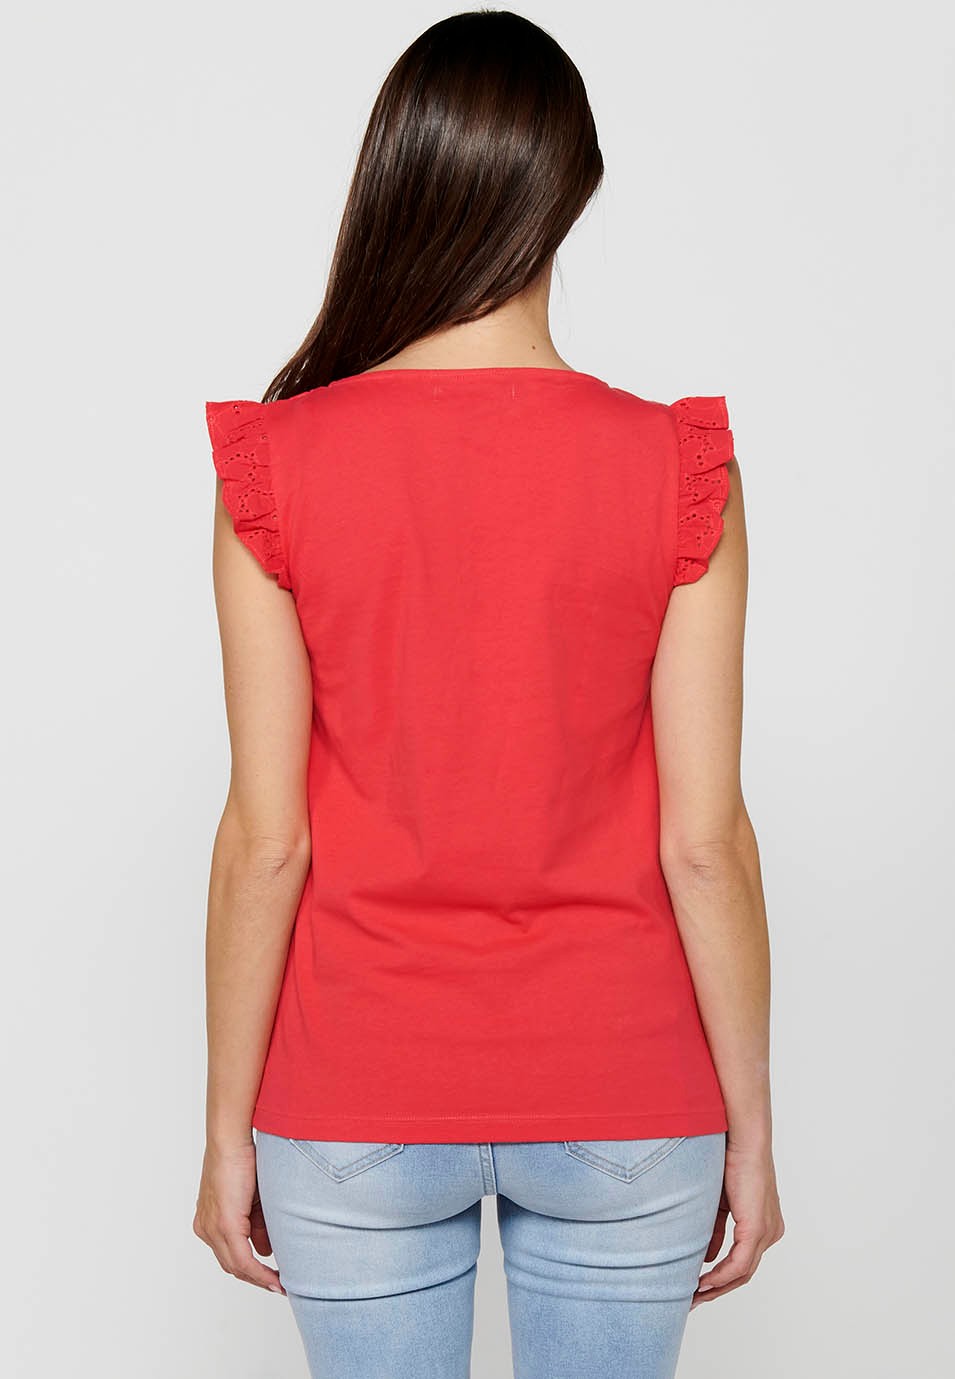 T-shirt à manches courtes et col rond pour femmes, couleur corail, épaules à volants